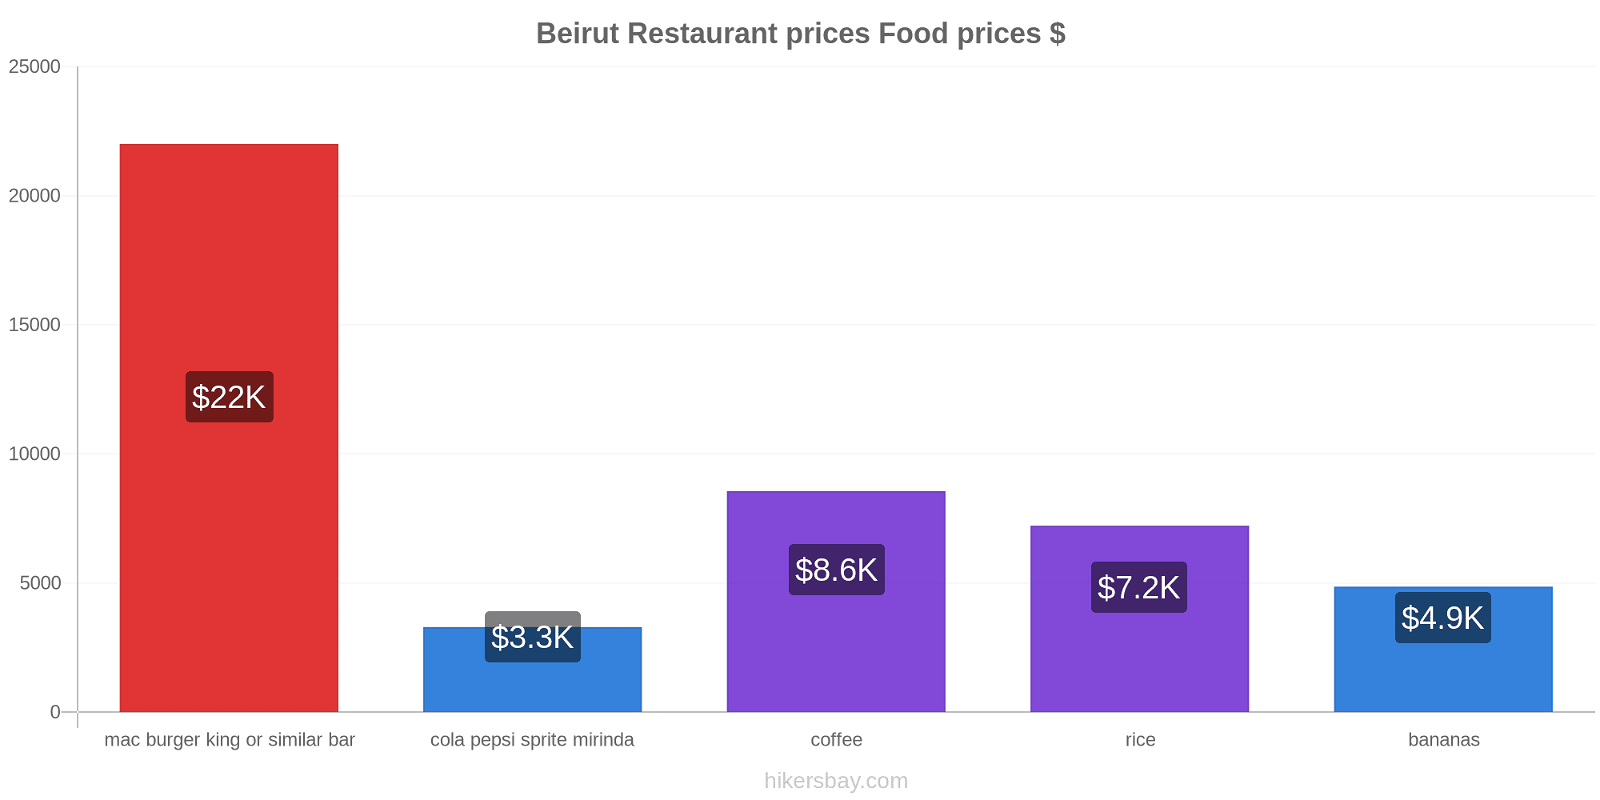 Beirut price changes hikersbay.com